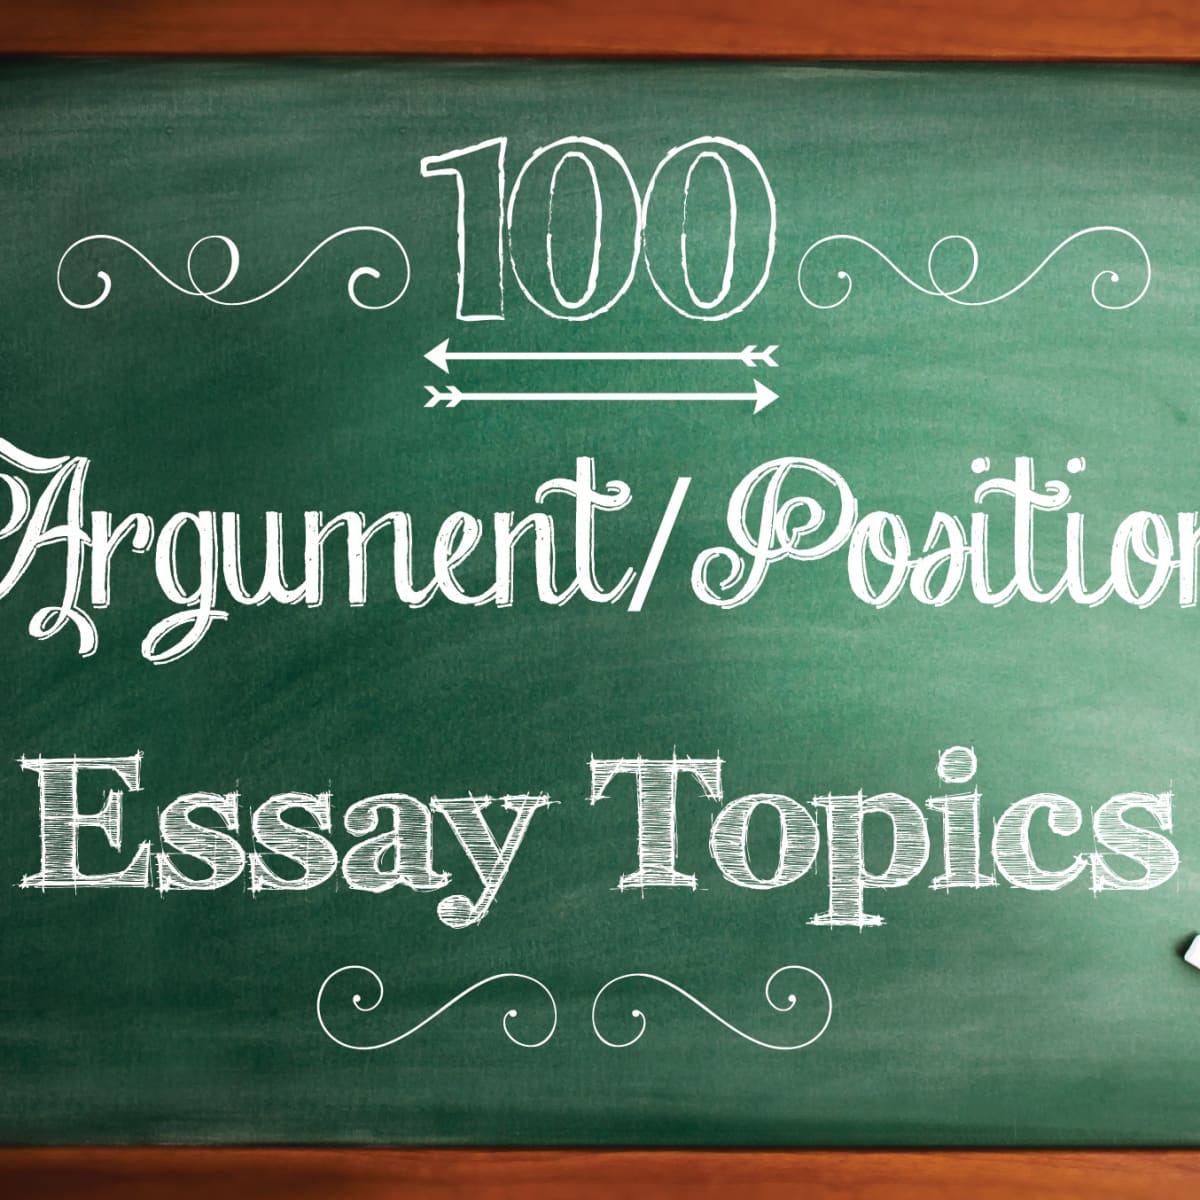 creative titles for persuasive essays